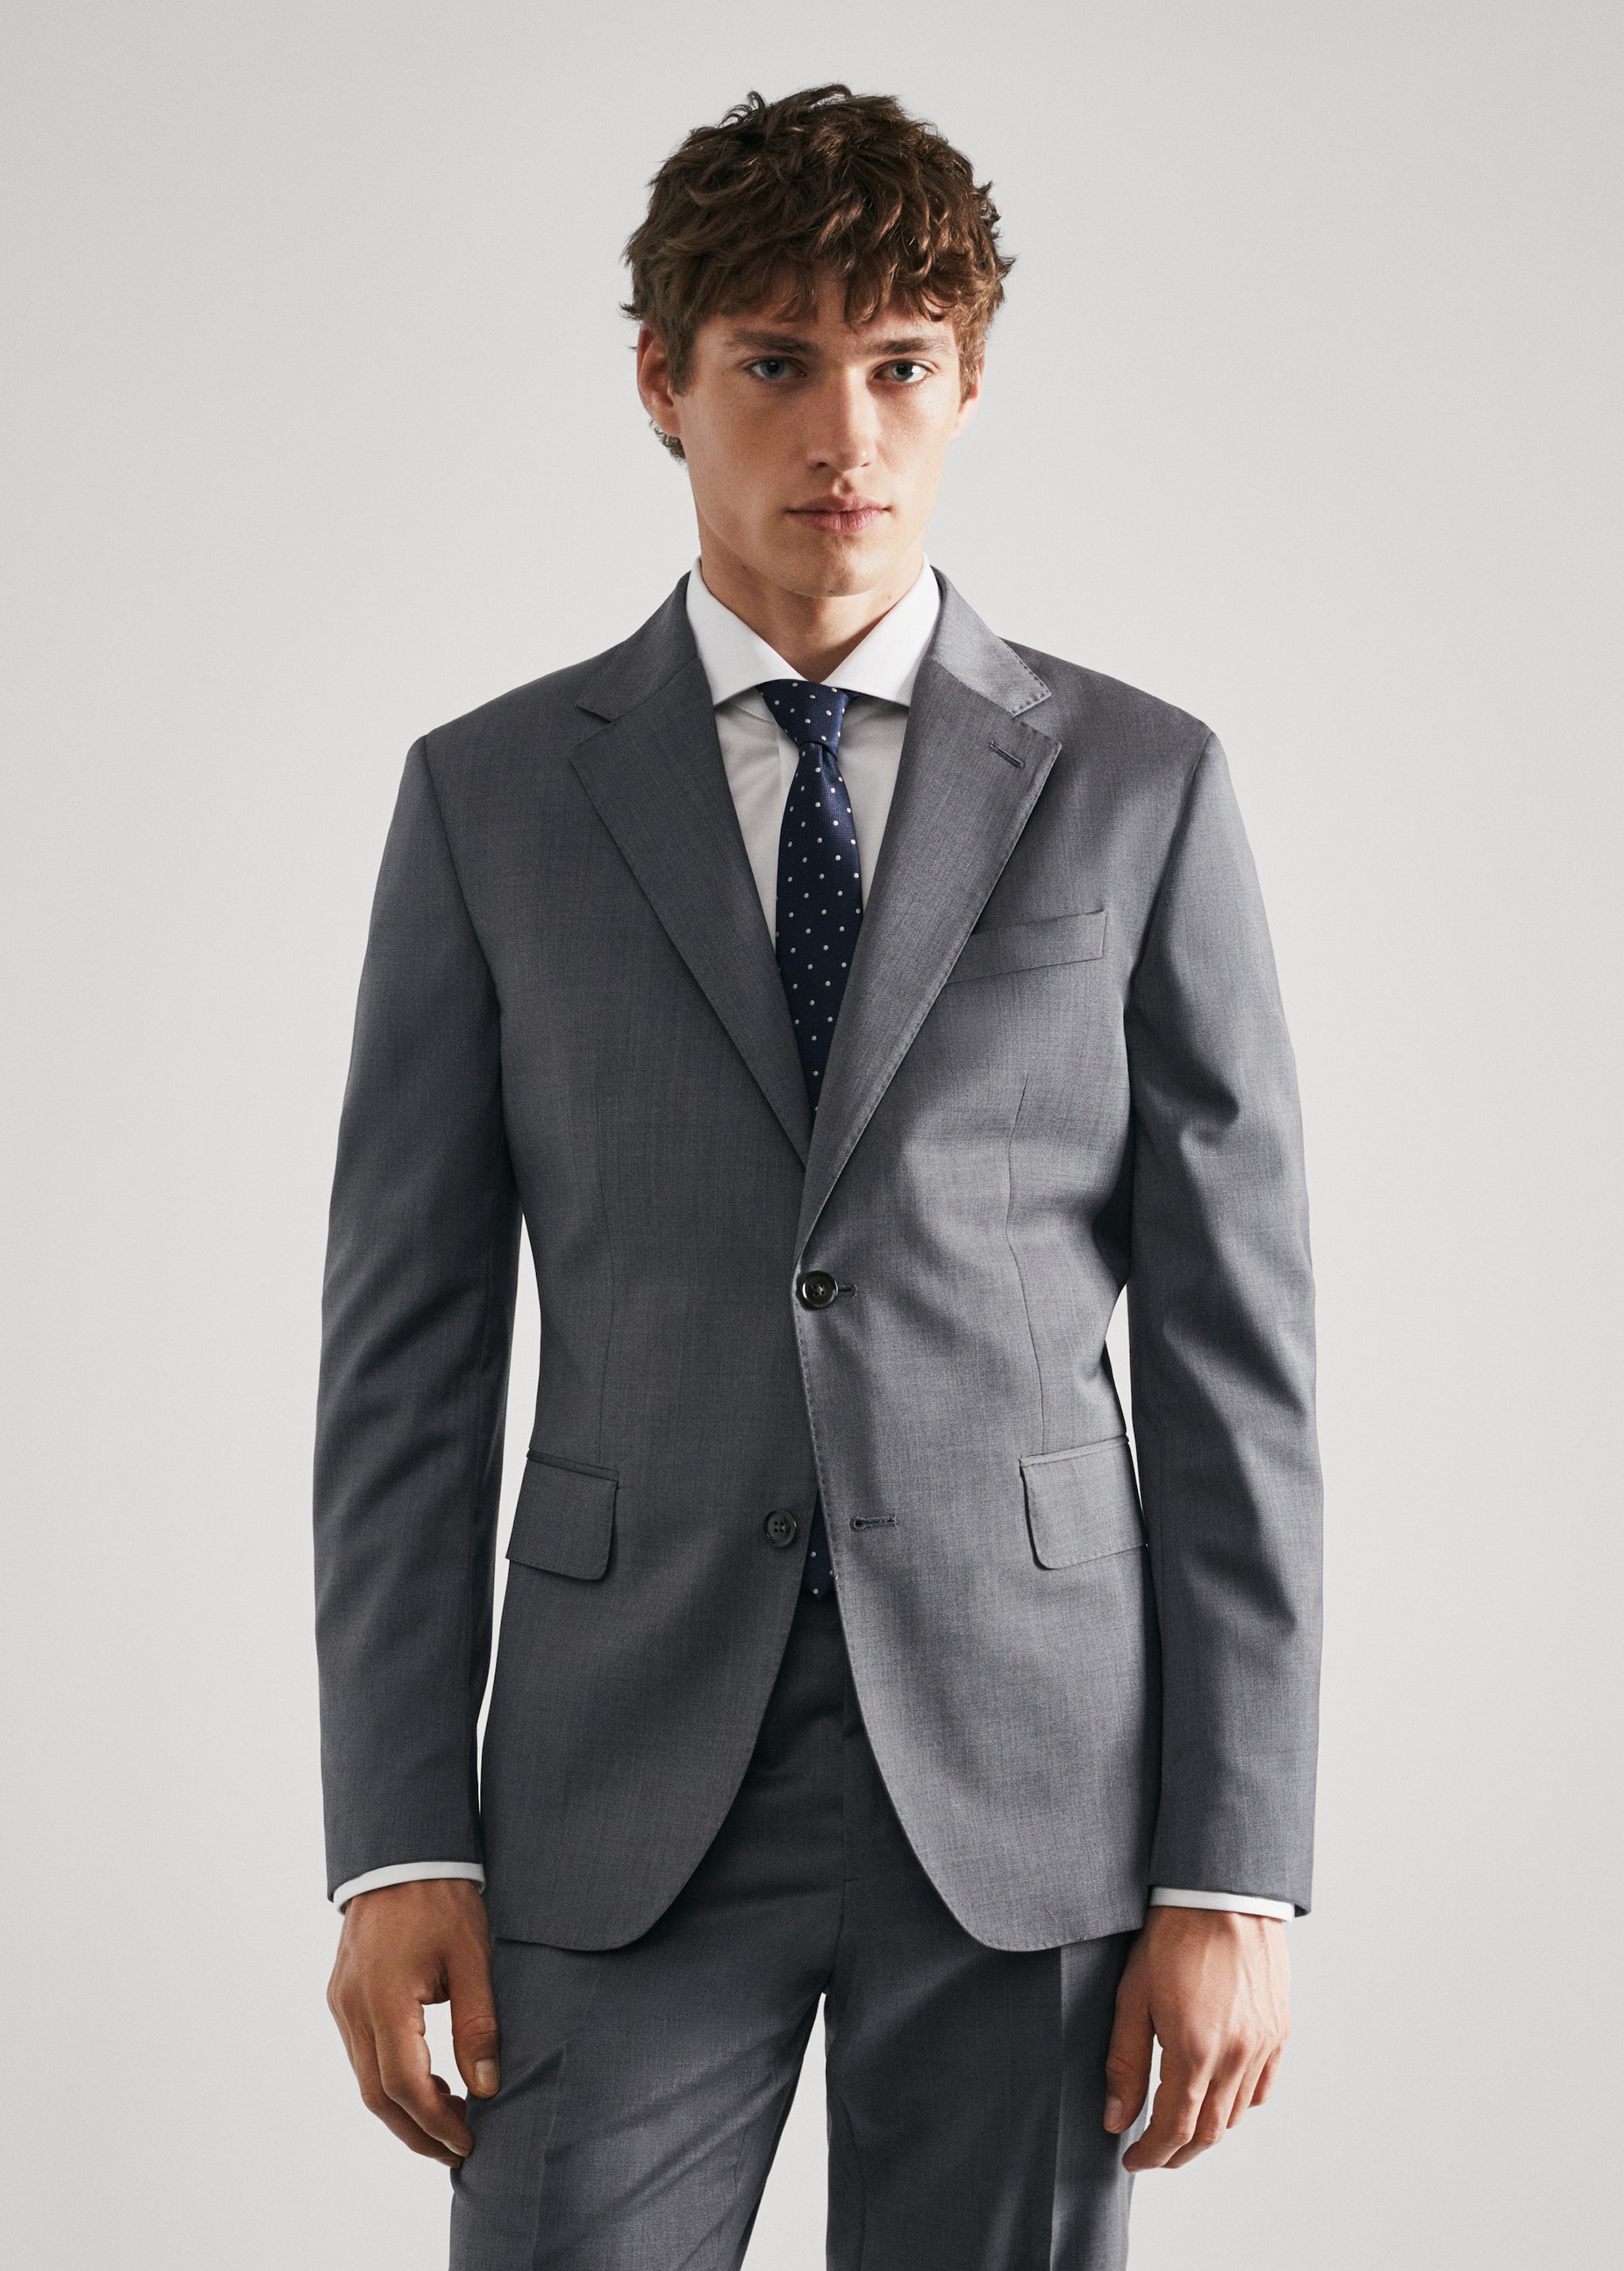 100% virgin wool suit jacket - Medium plane